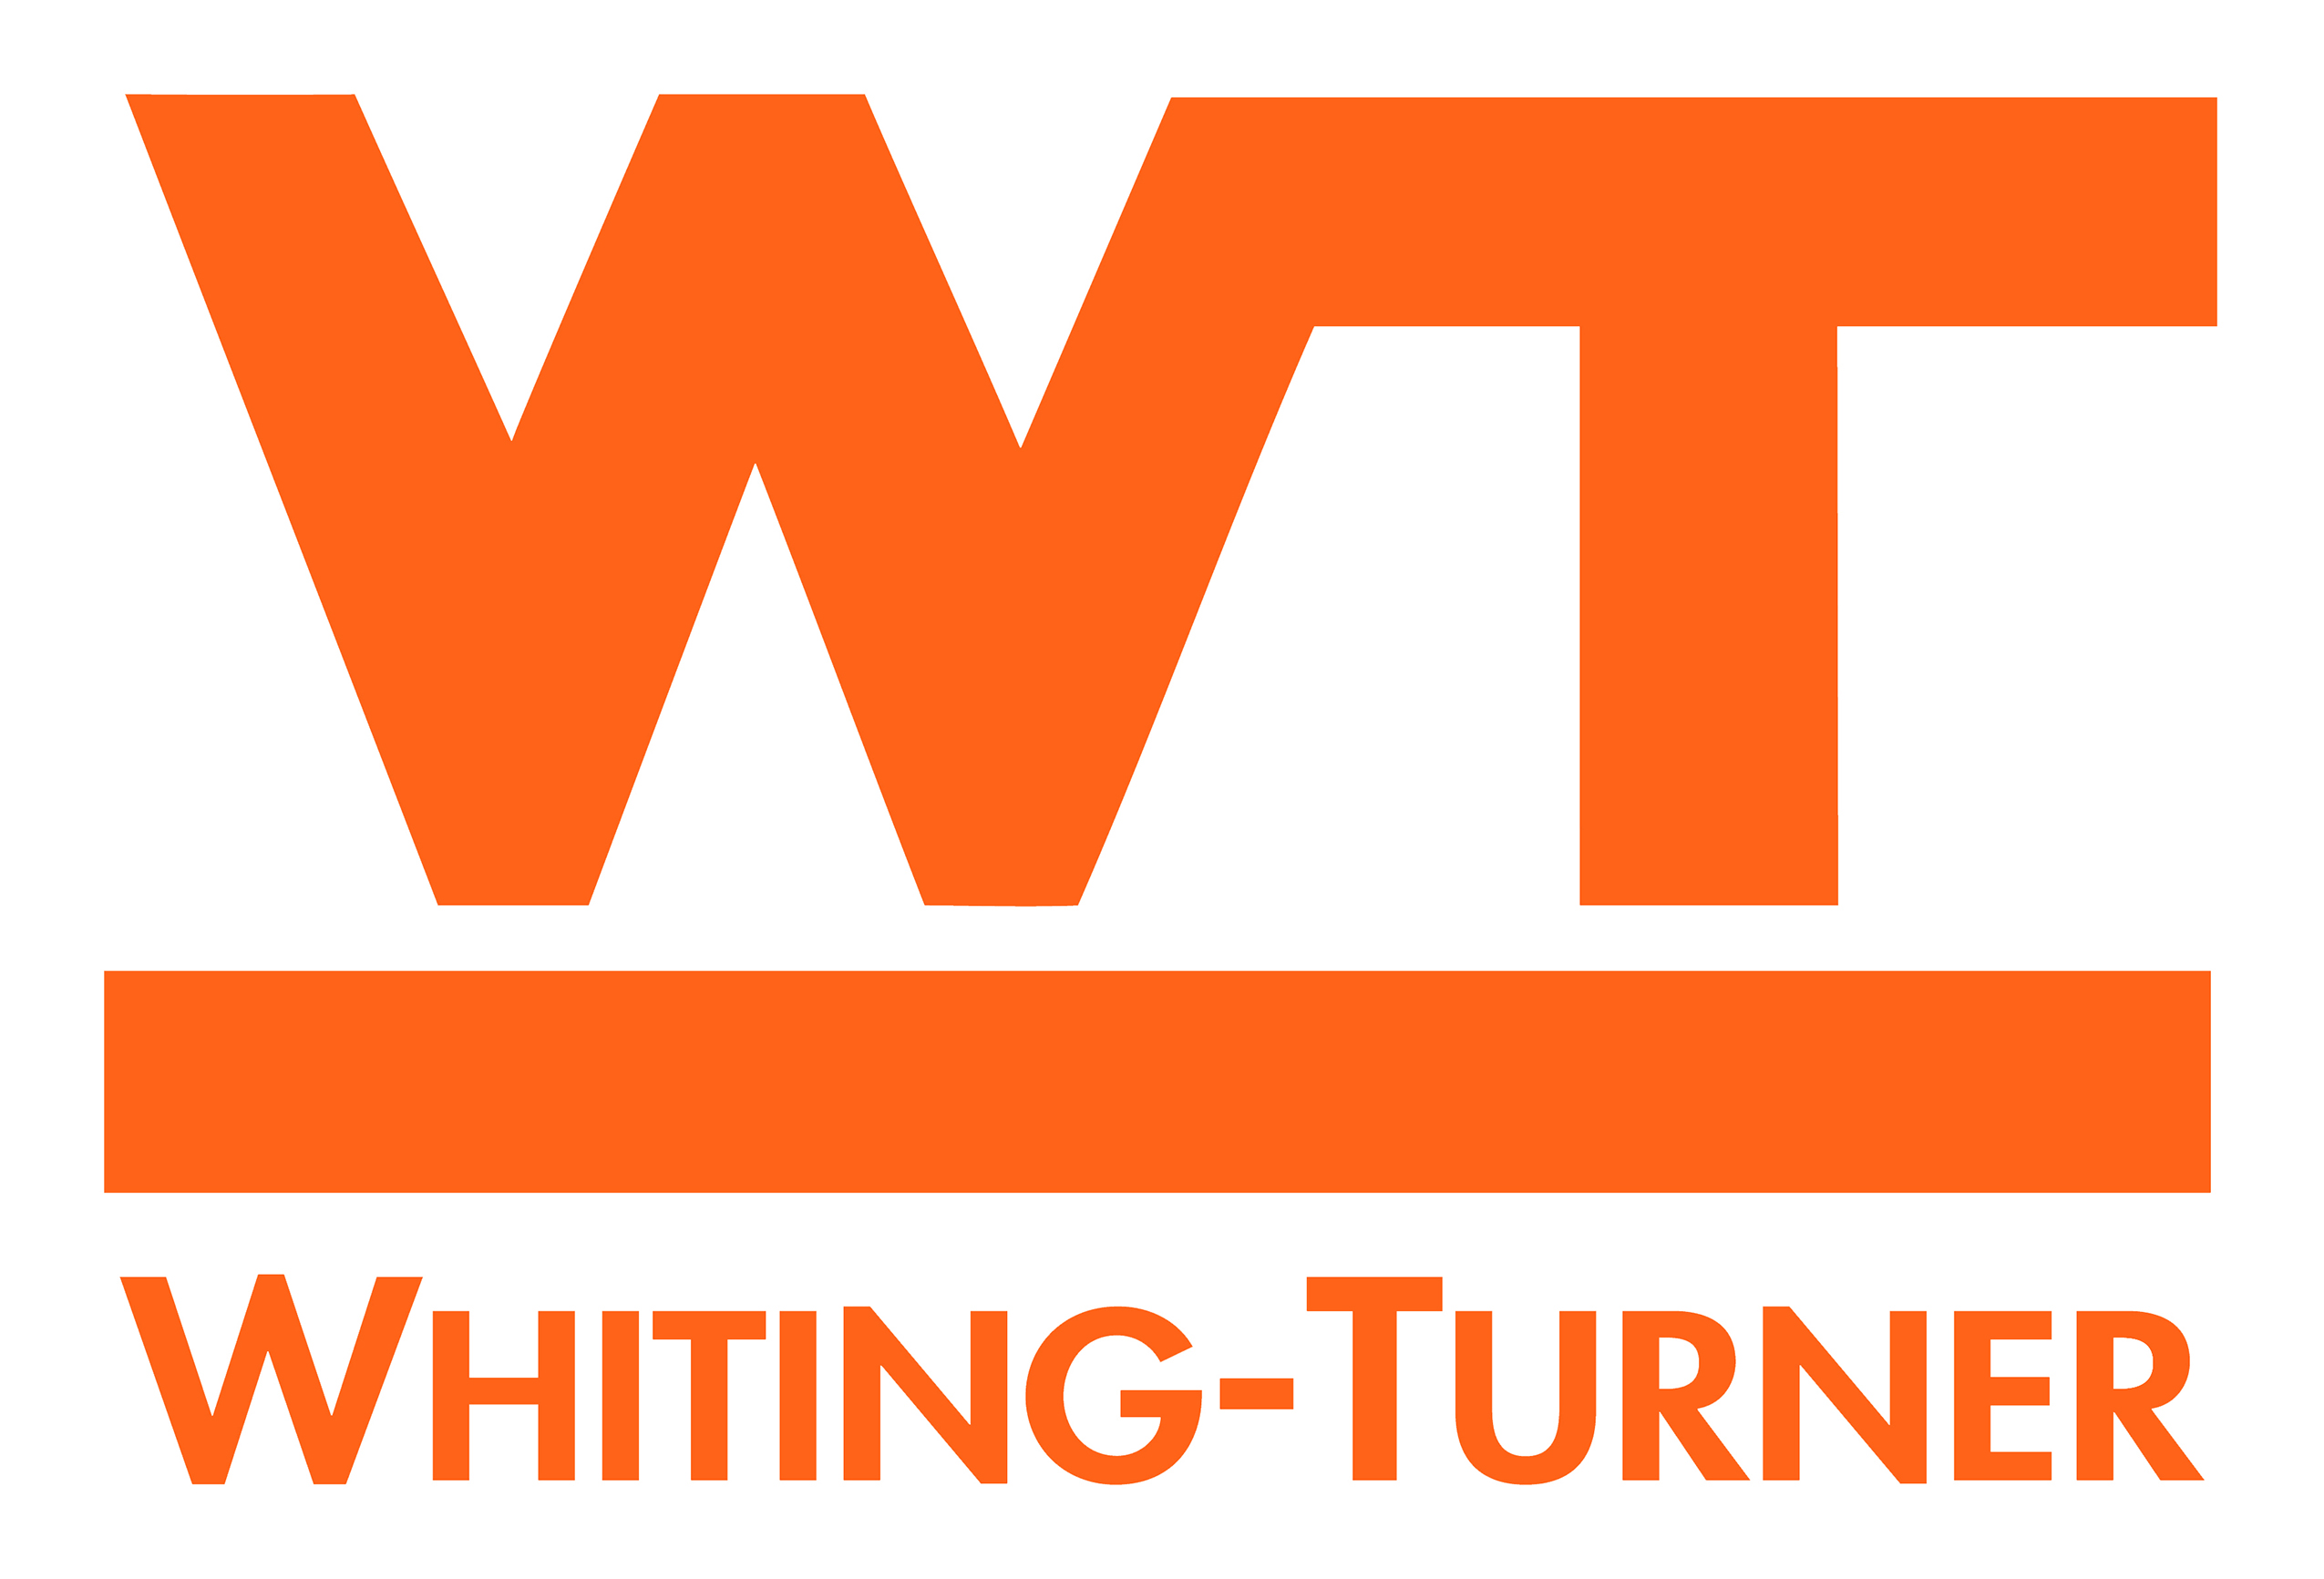 WhitingTurner-Orange